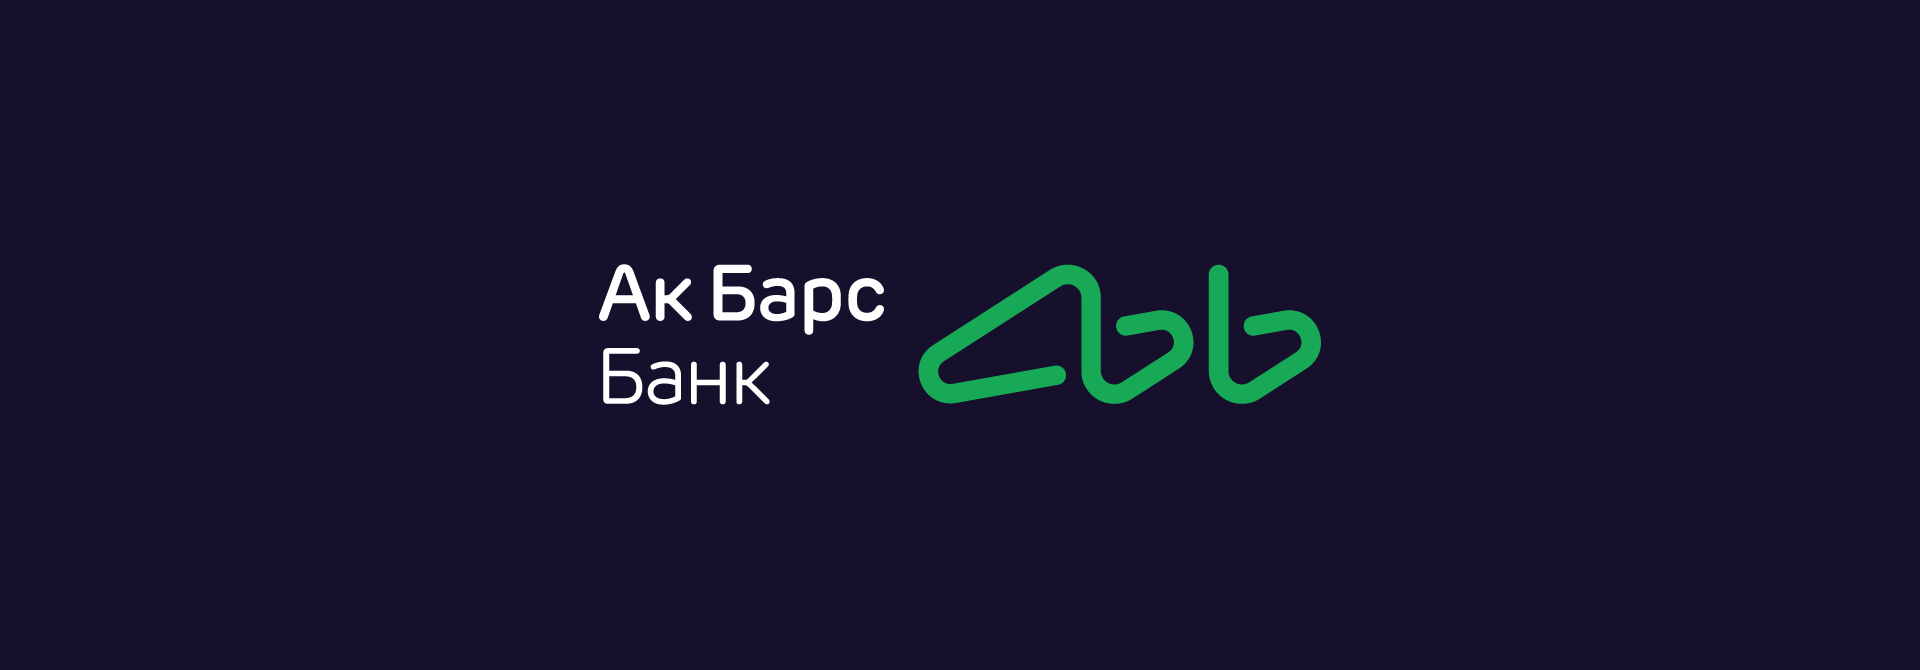 Акбарсбанк горячей линии телефон. АК Барс банк реклама. АК Барс банк логотип 2023. АК Барс банк картинки. Барс банк логотип.